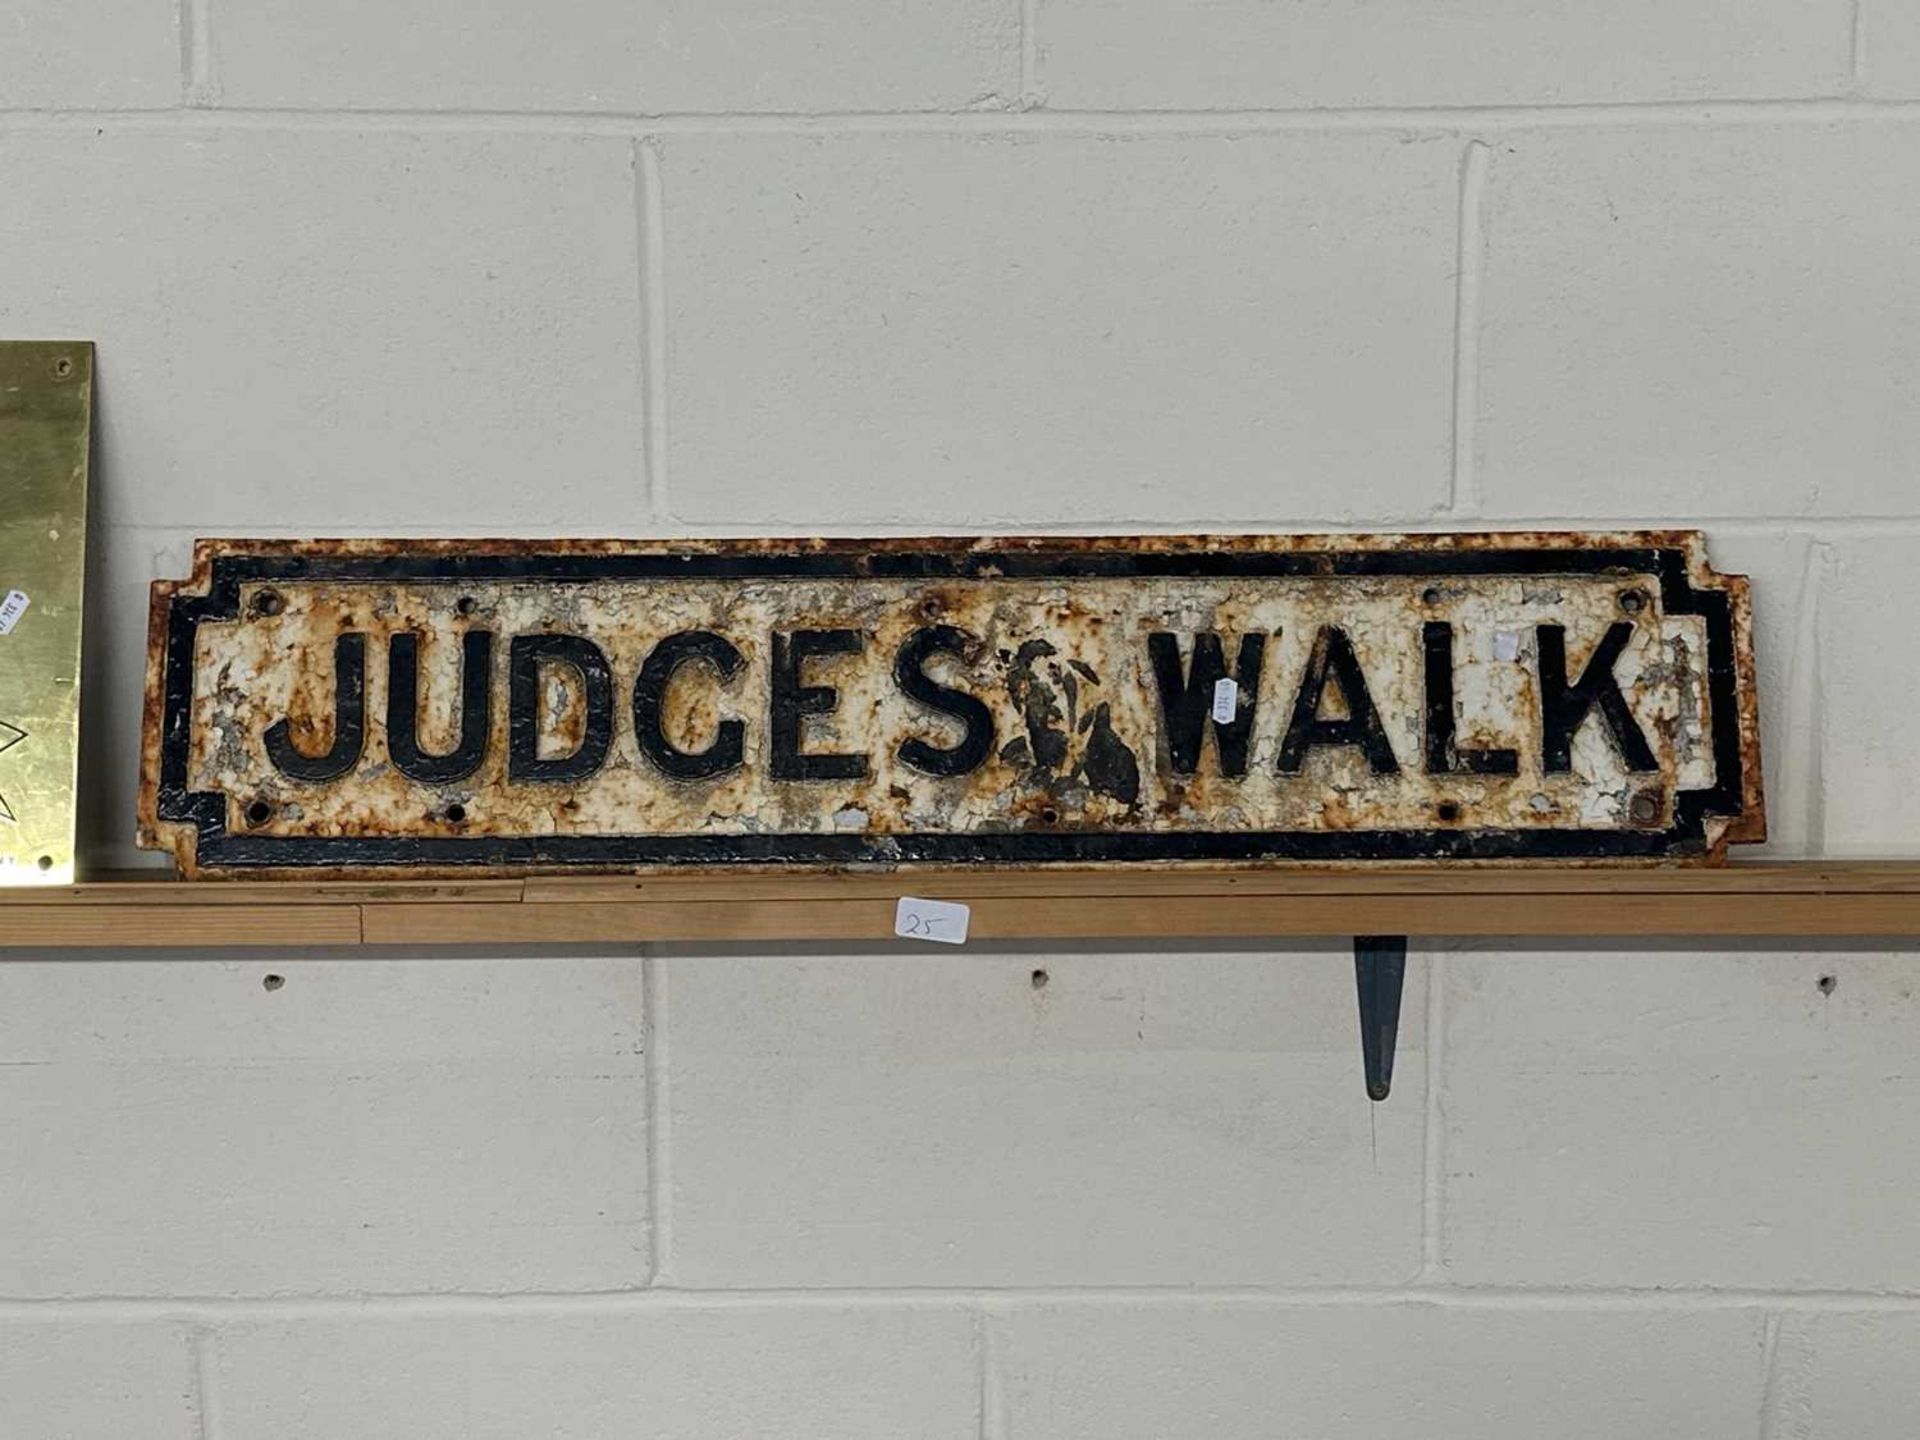 Vintage cast road sign "Judges Walk"